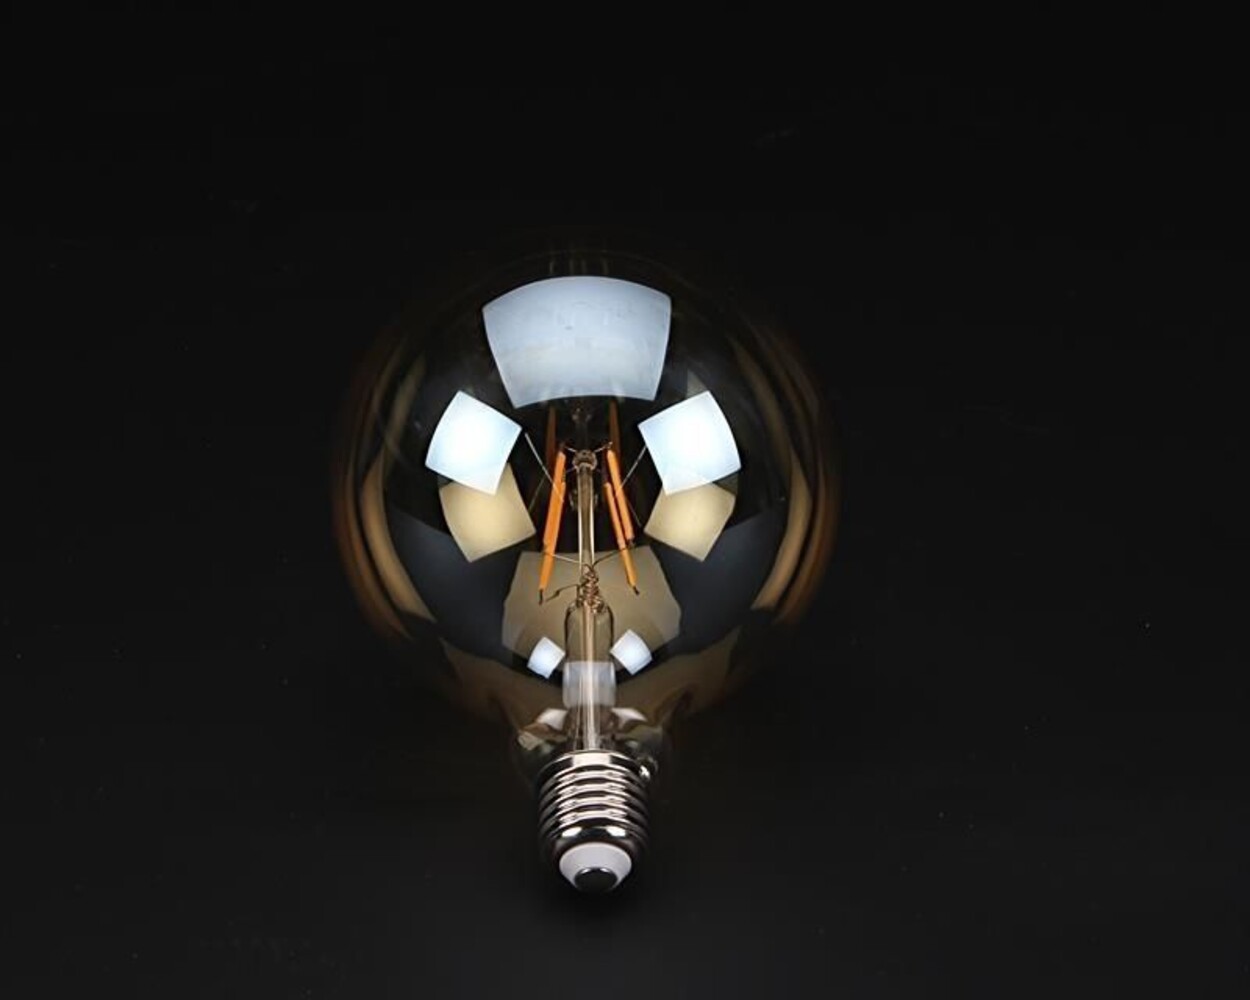 Schönes unglaublich warmes Filament-Leuchtmittel von der Marke Deko-Light